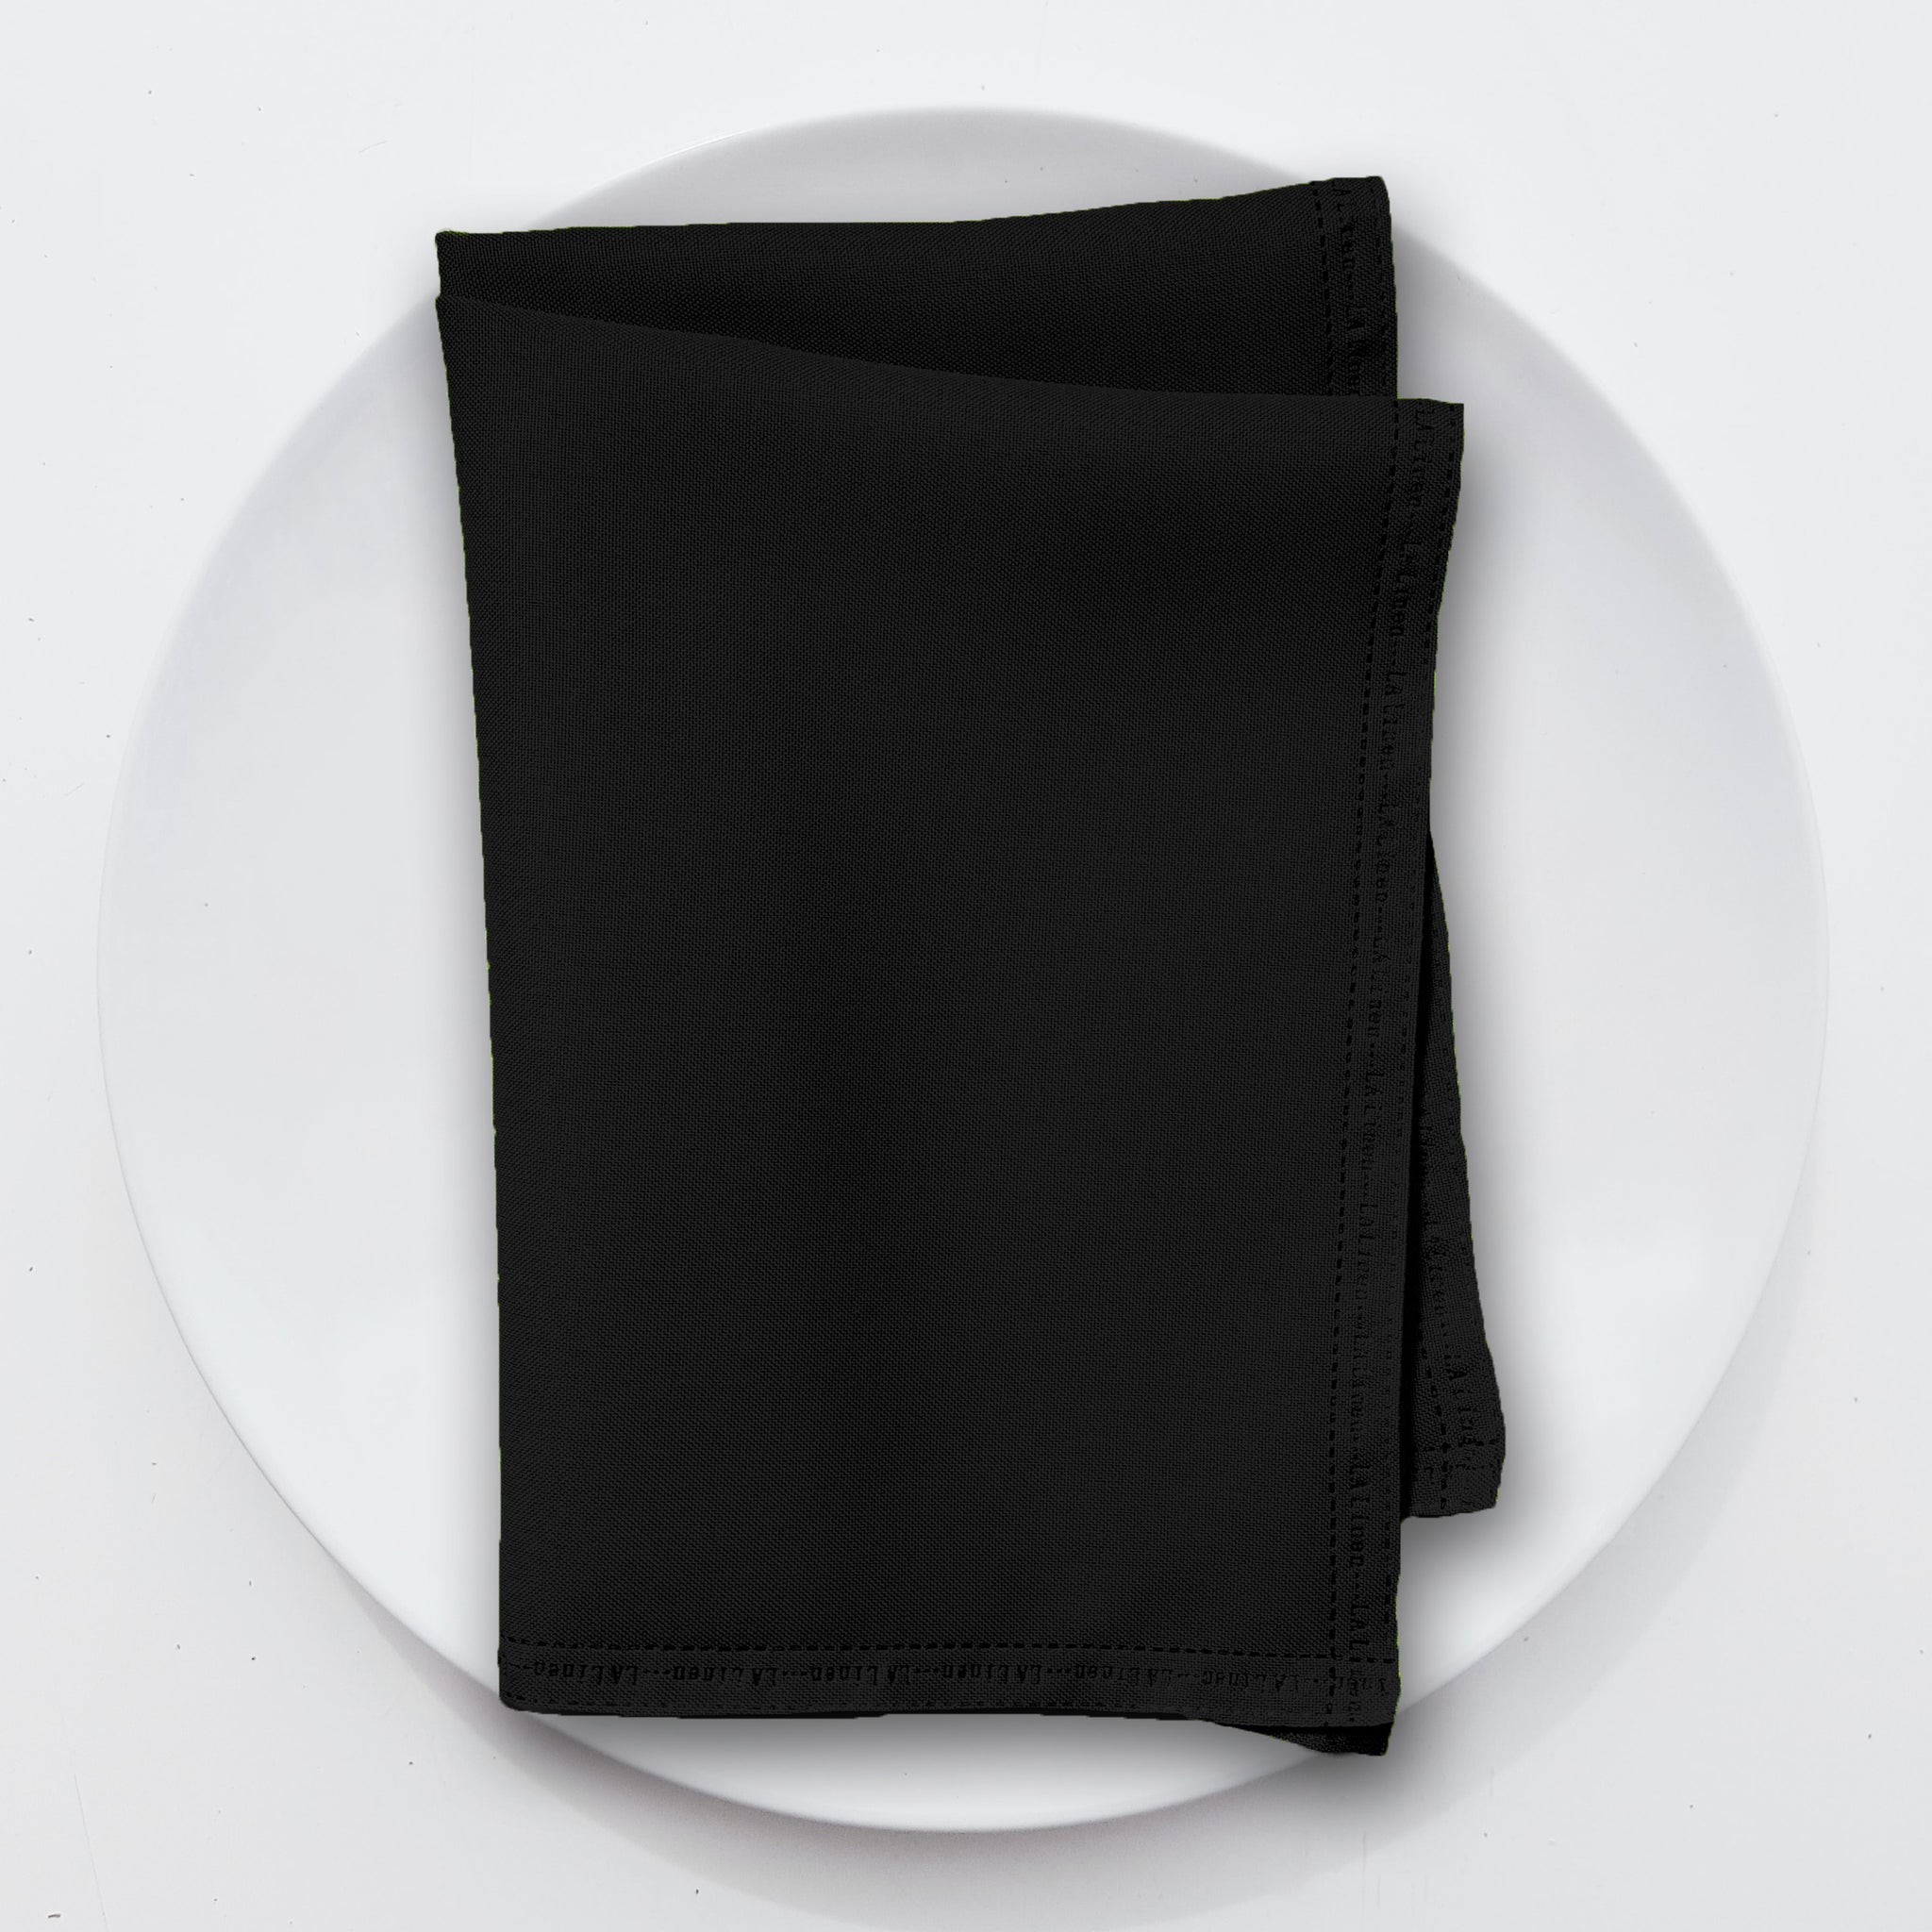 La Linen 10-Pack Polyester Poplin Napkin 18 by 18-Inch, Ivory